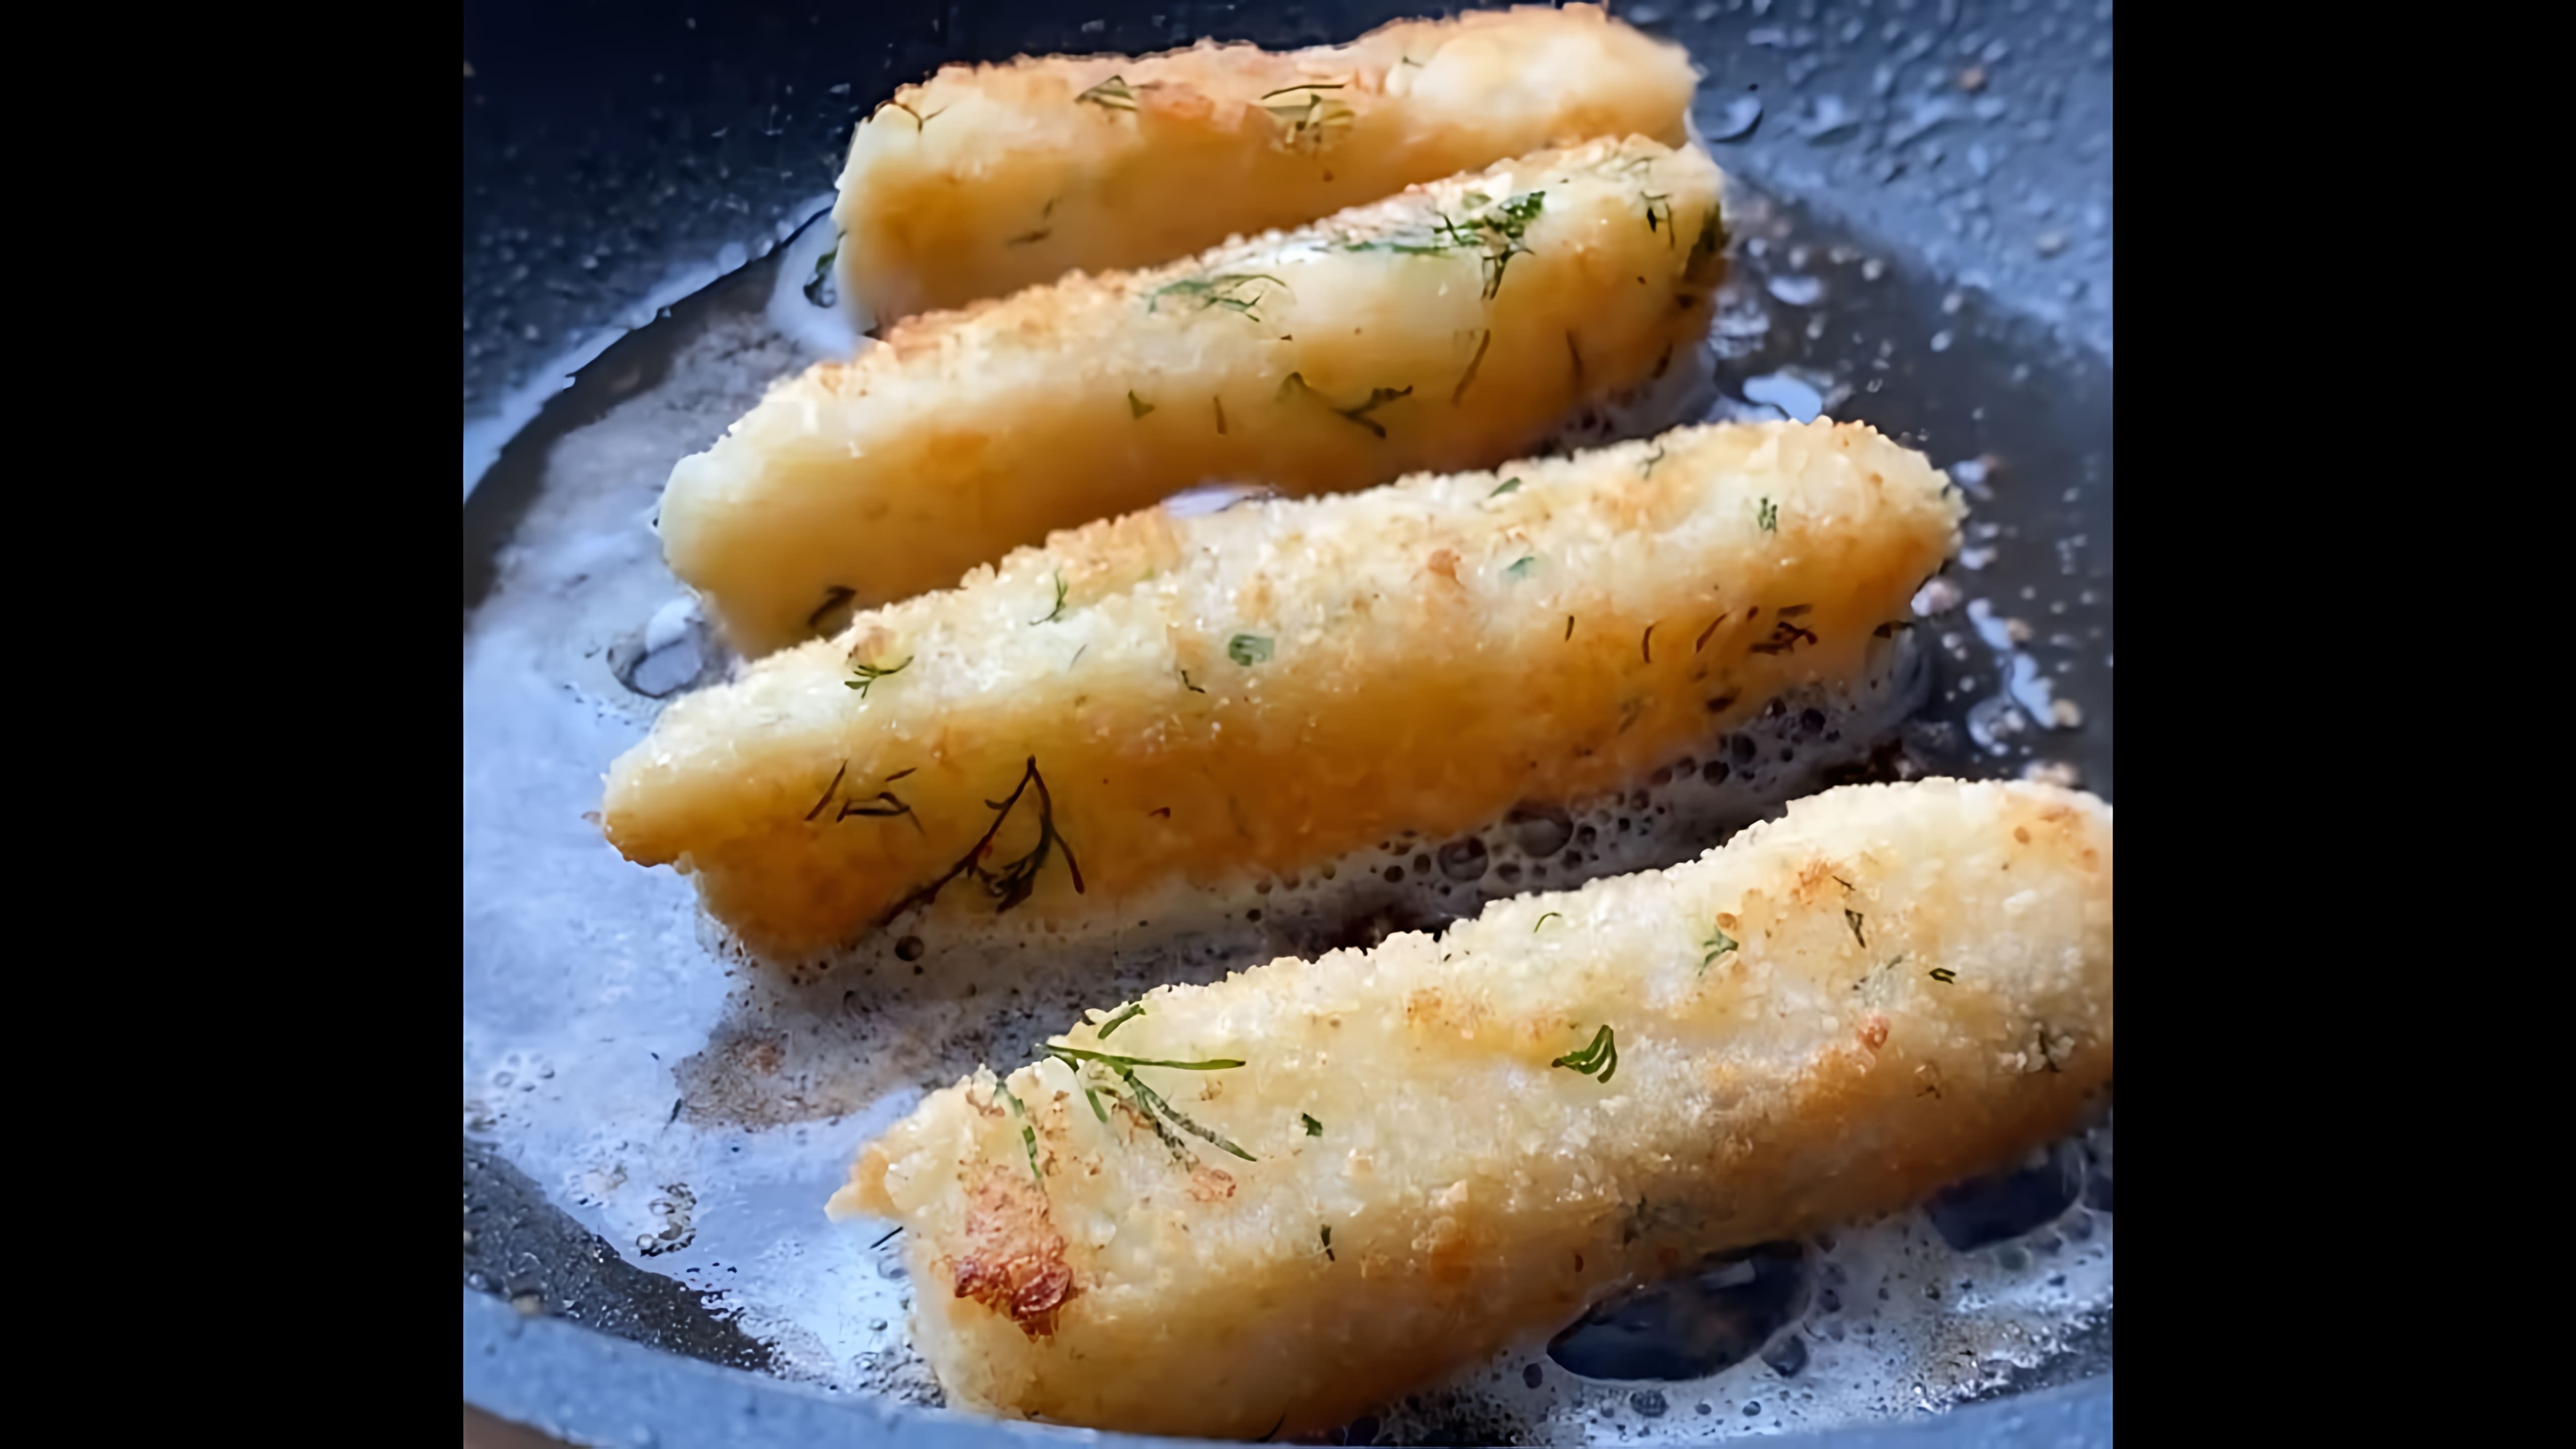 В этом видео демонстрируется рецепт приготовления рыбных палочек в панировке на сковороде